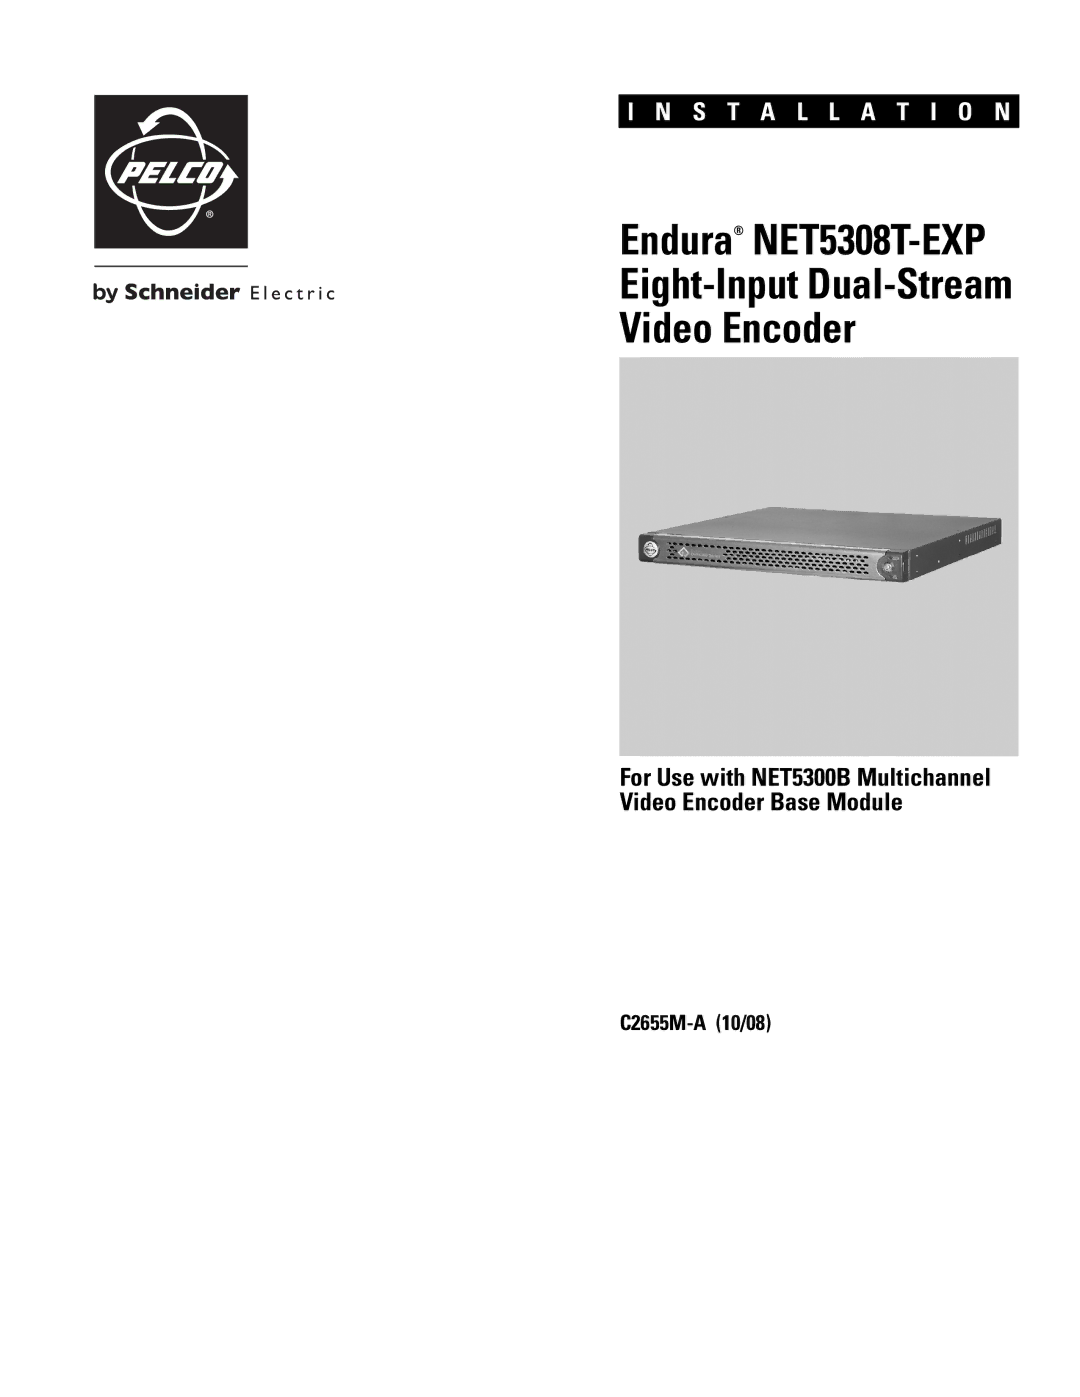 Pelco manual Endura NET5308T-EXP 